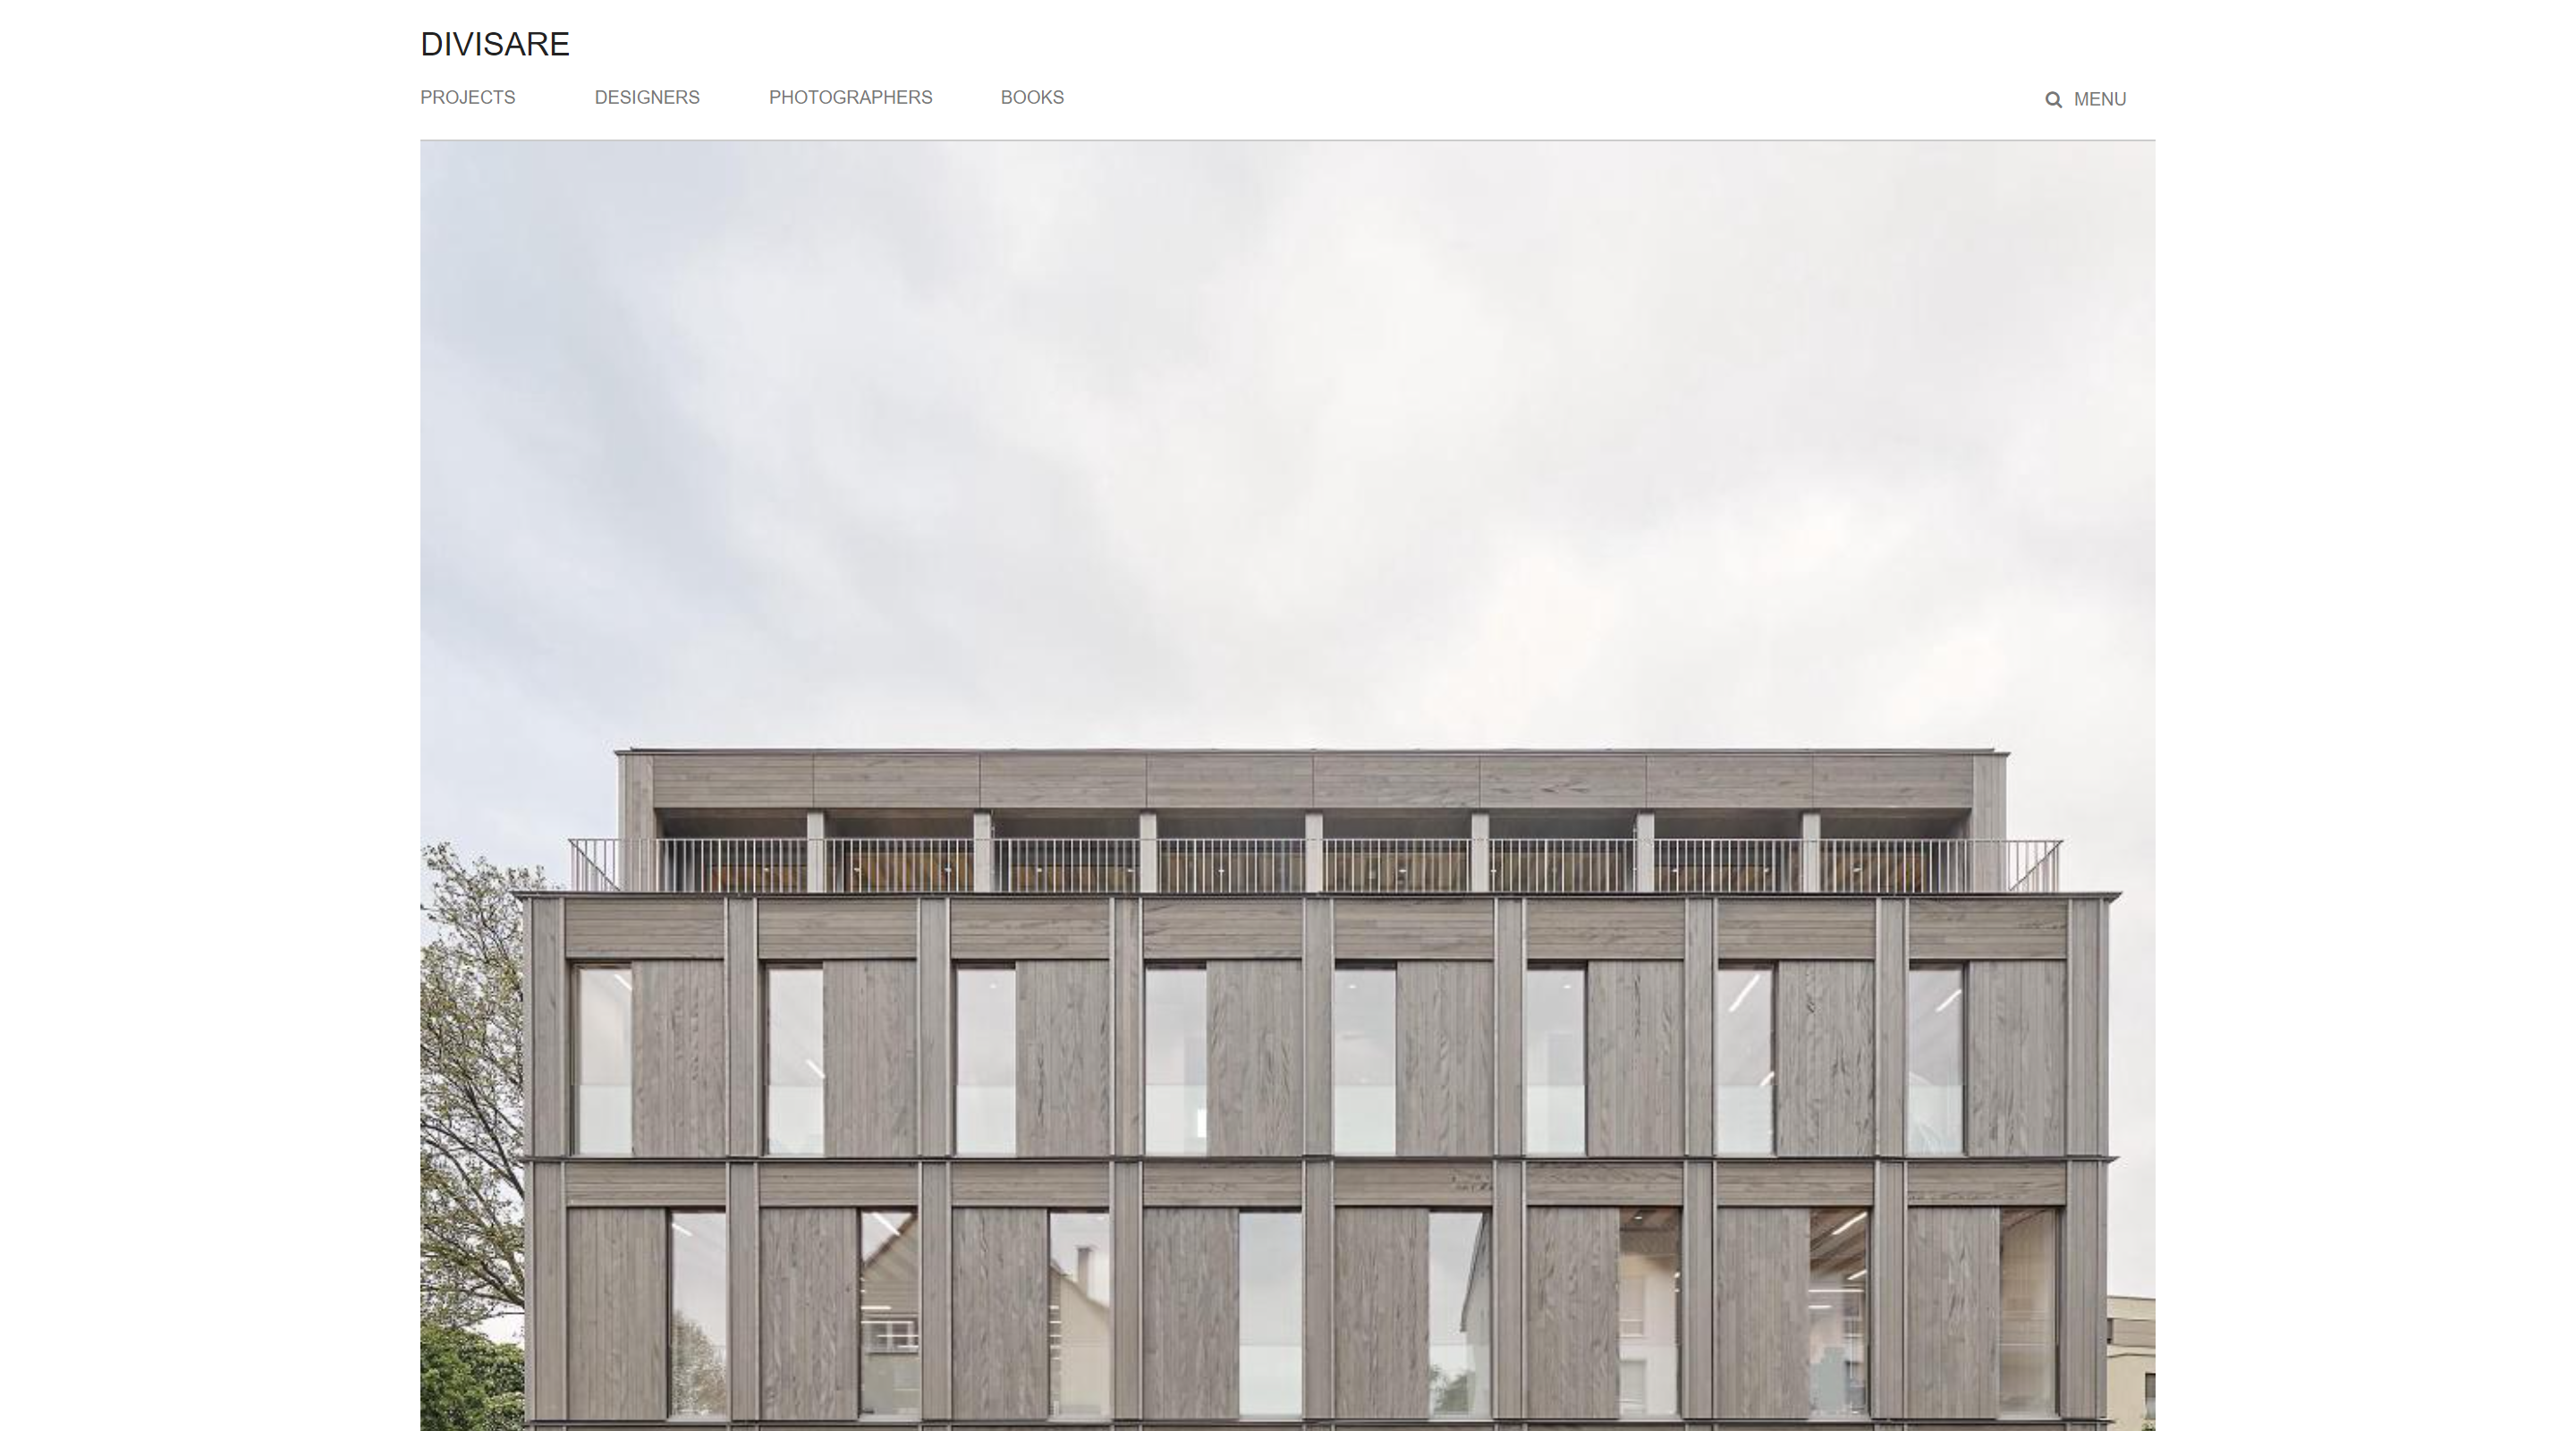 Divisare Architecture Website